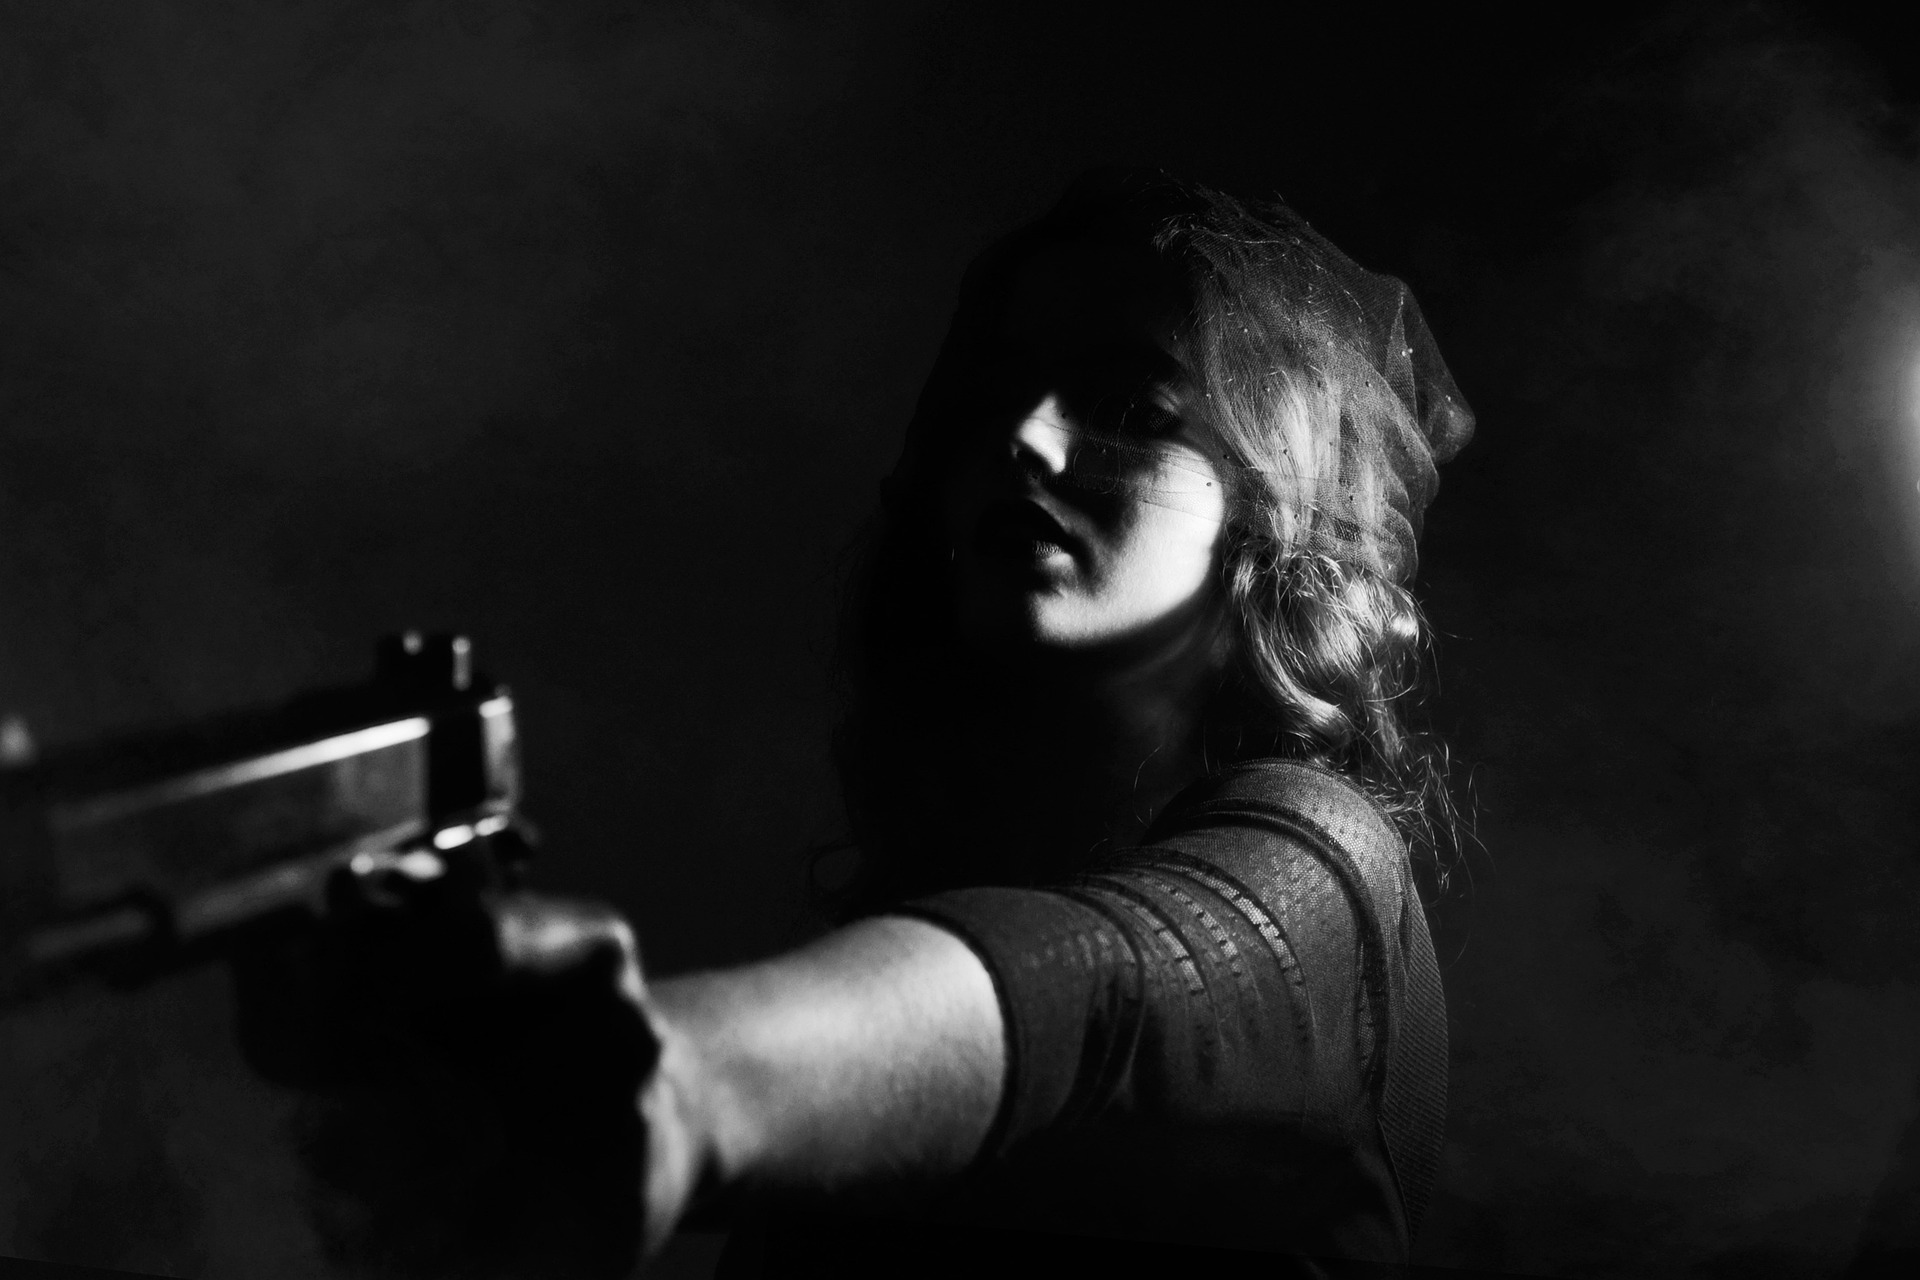 kobieta pistolet strzelanka